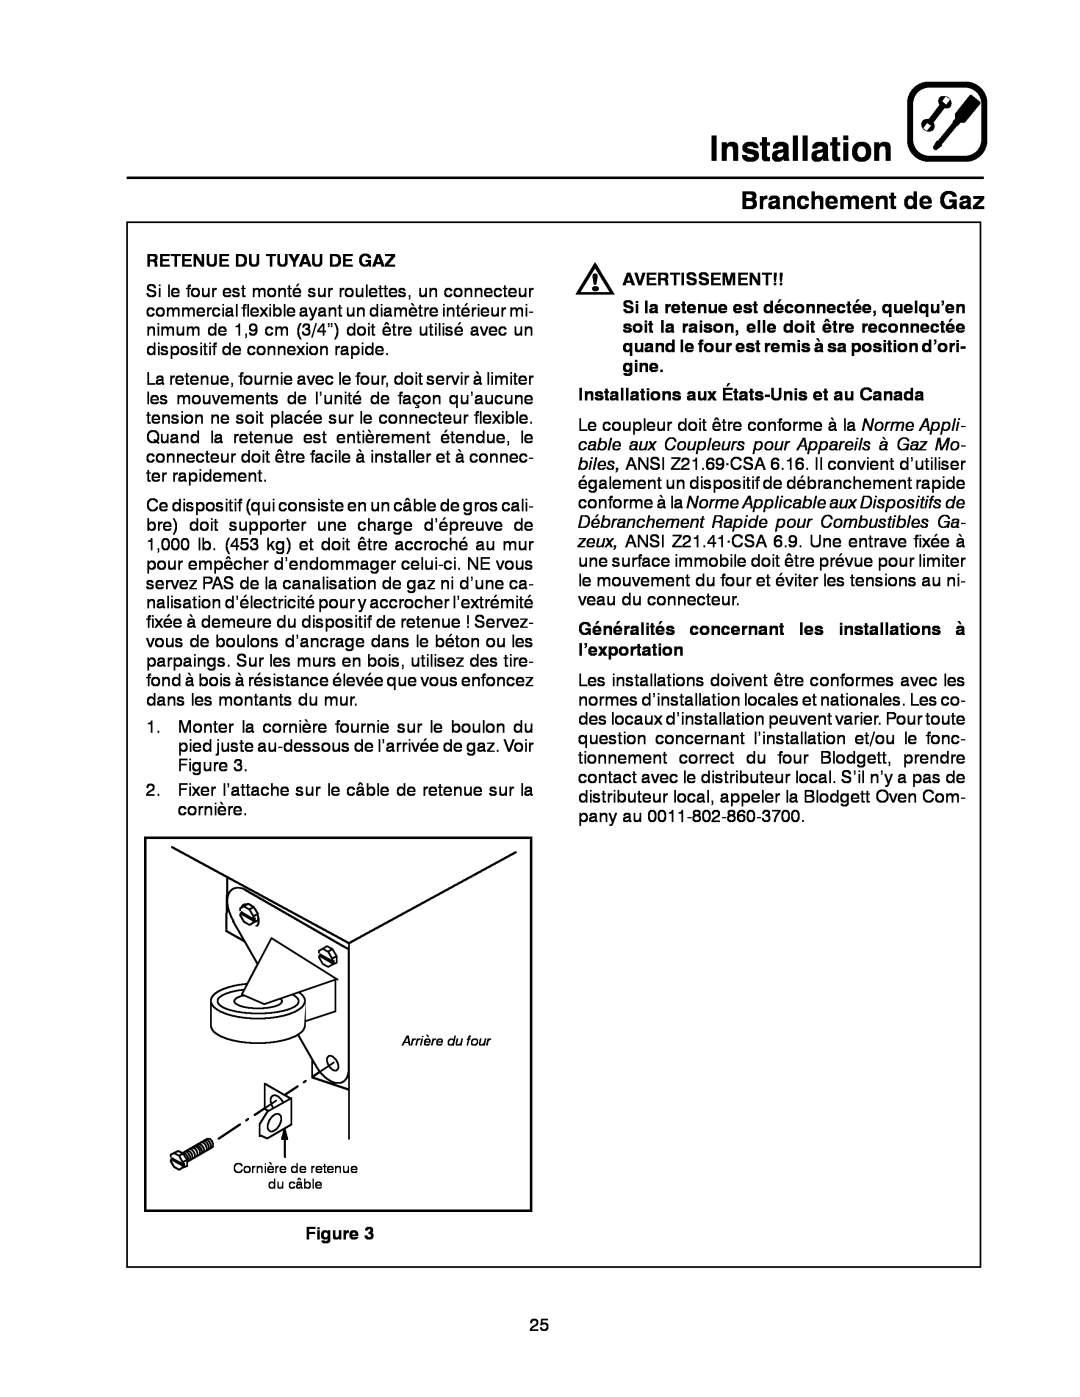 Blodgett XR8-G manual Installation, Branchement de Gaz, Retenue Du Tuyau De Gaz, Avertissement 